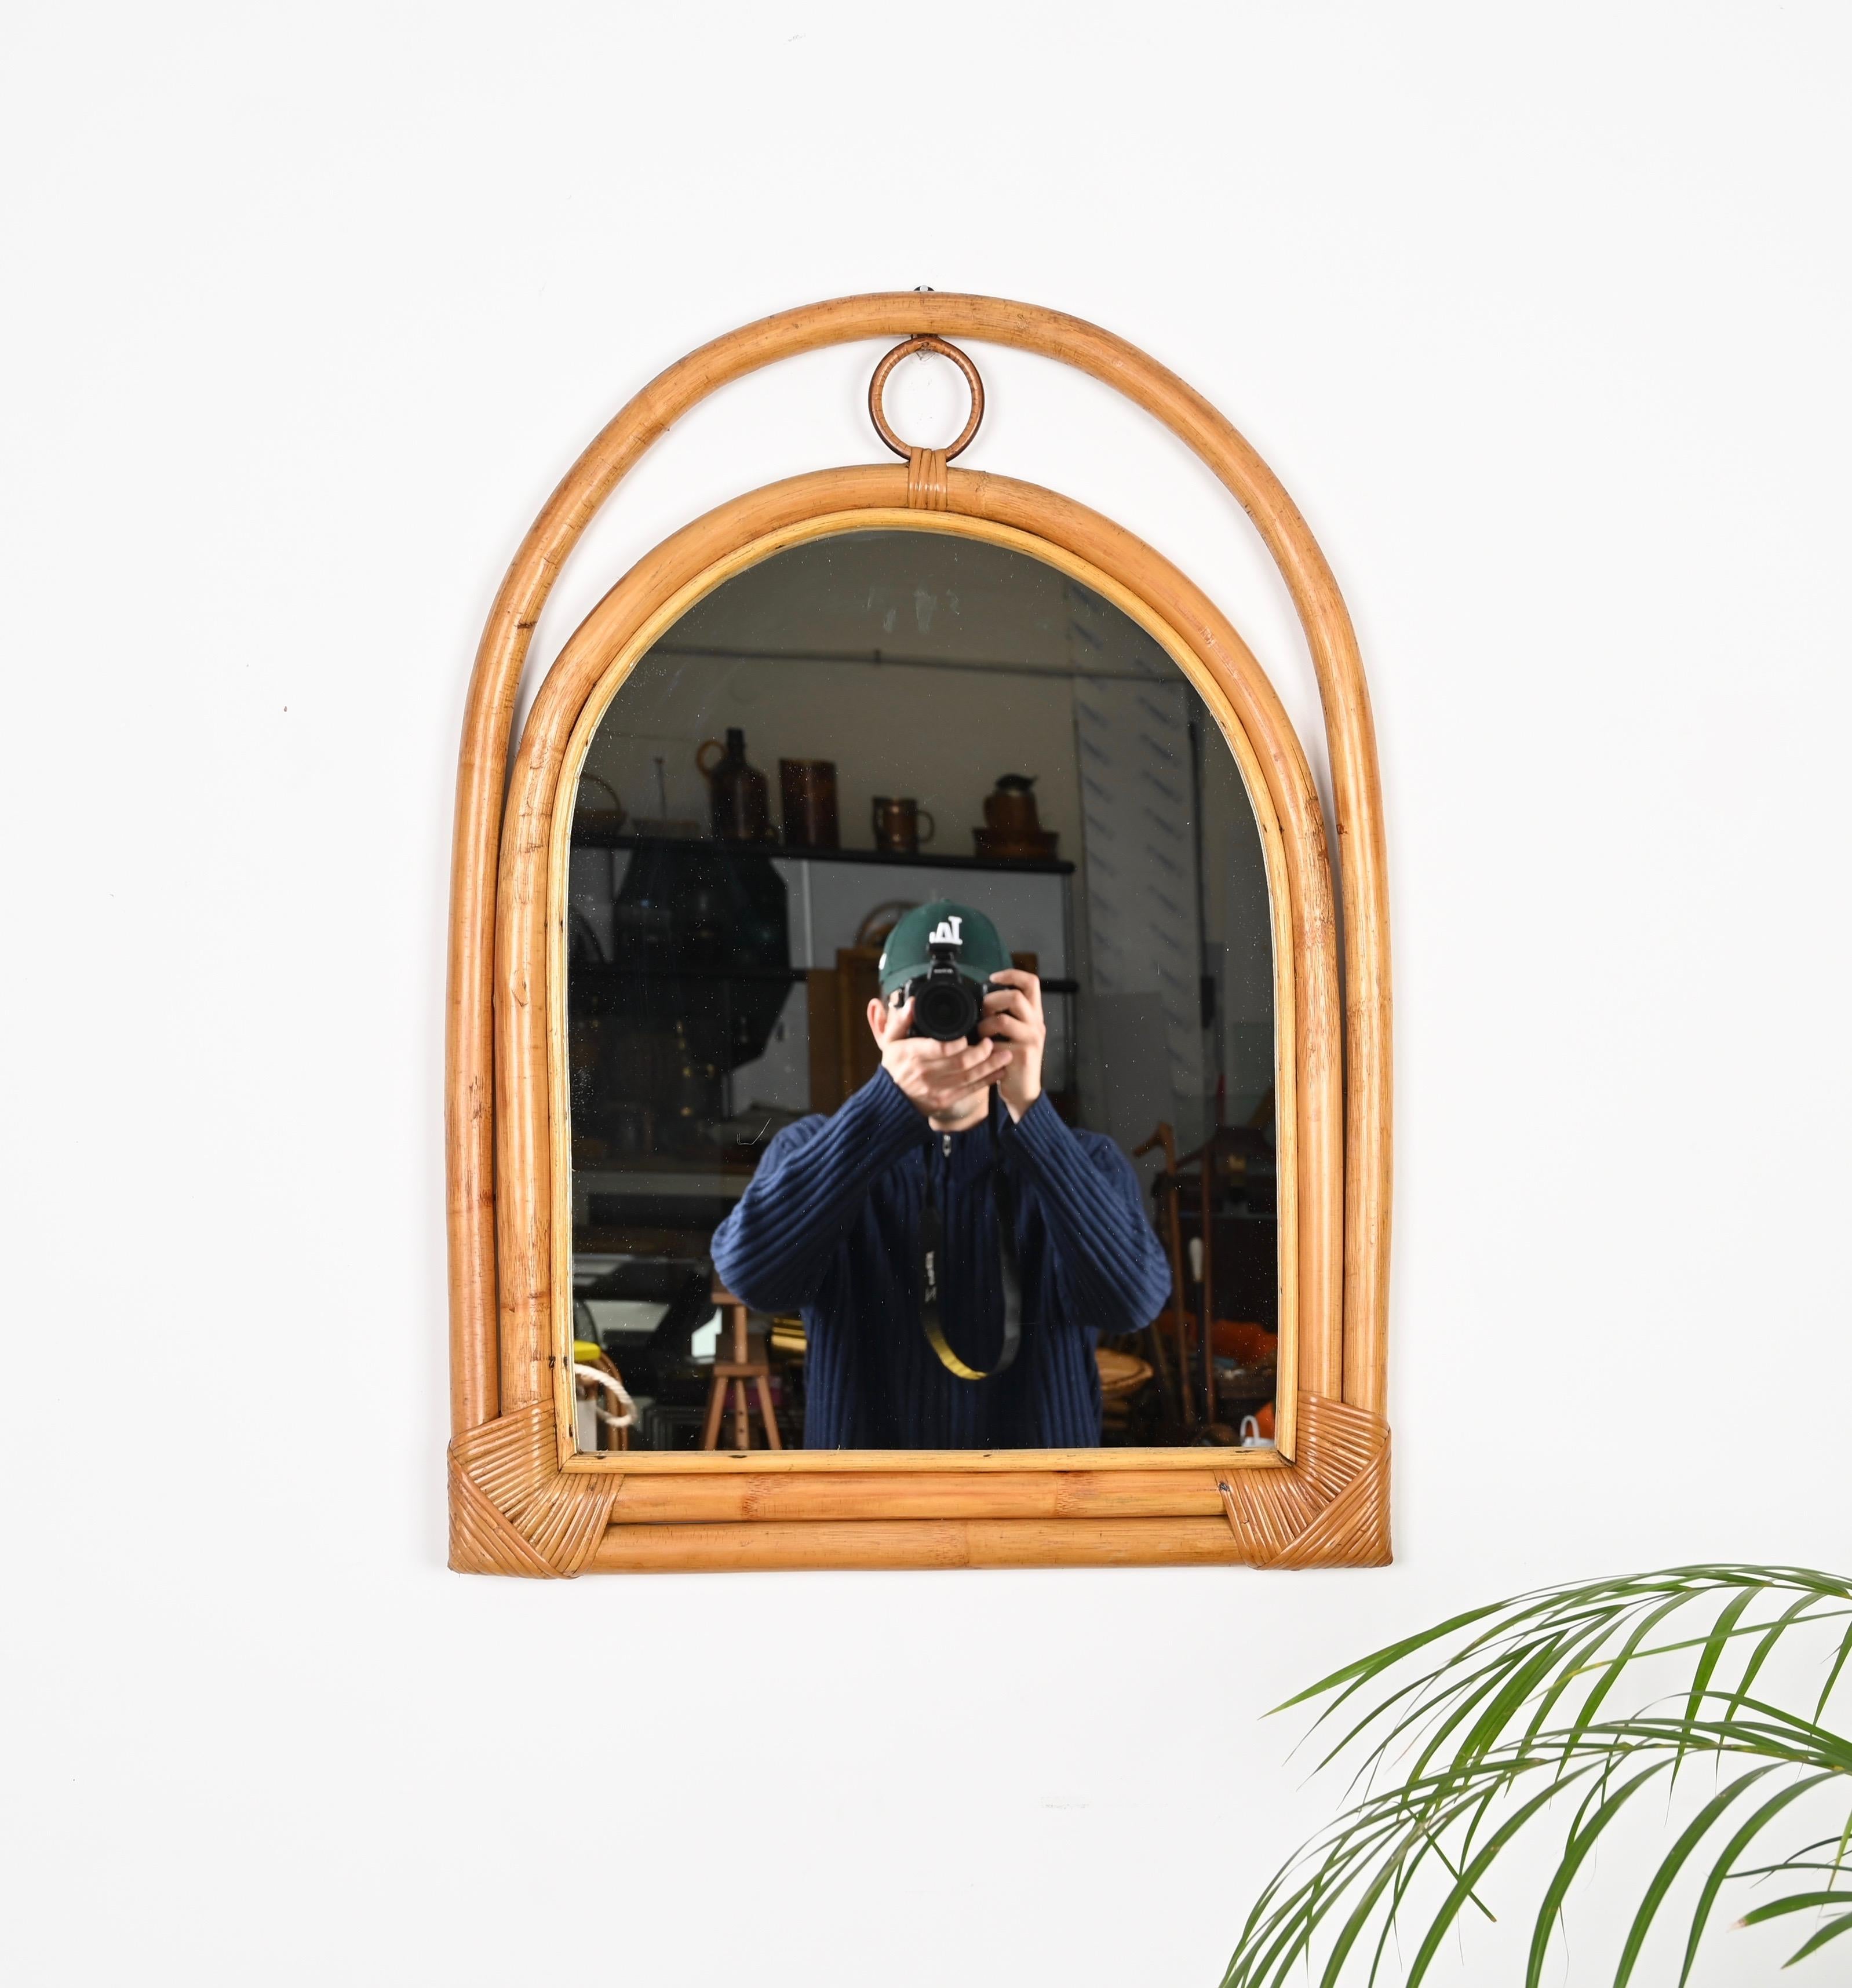 Schöner bogenförmiger Mid-Century-Spiegel aus gebogenem Bambus, Rattan und Weide. Dieser reizvolle Spiegel im Stil der französischen Riviera wurde in den 1970er Jahren in Italien hergestellt. 

Dieser einzigartige Spiegel verfügt über einen